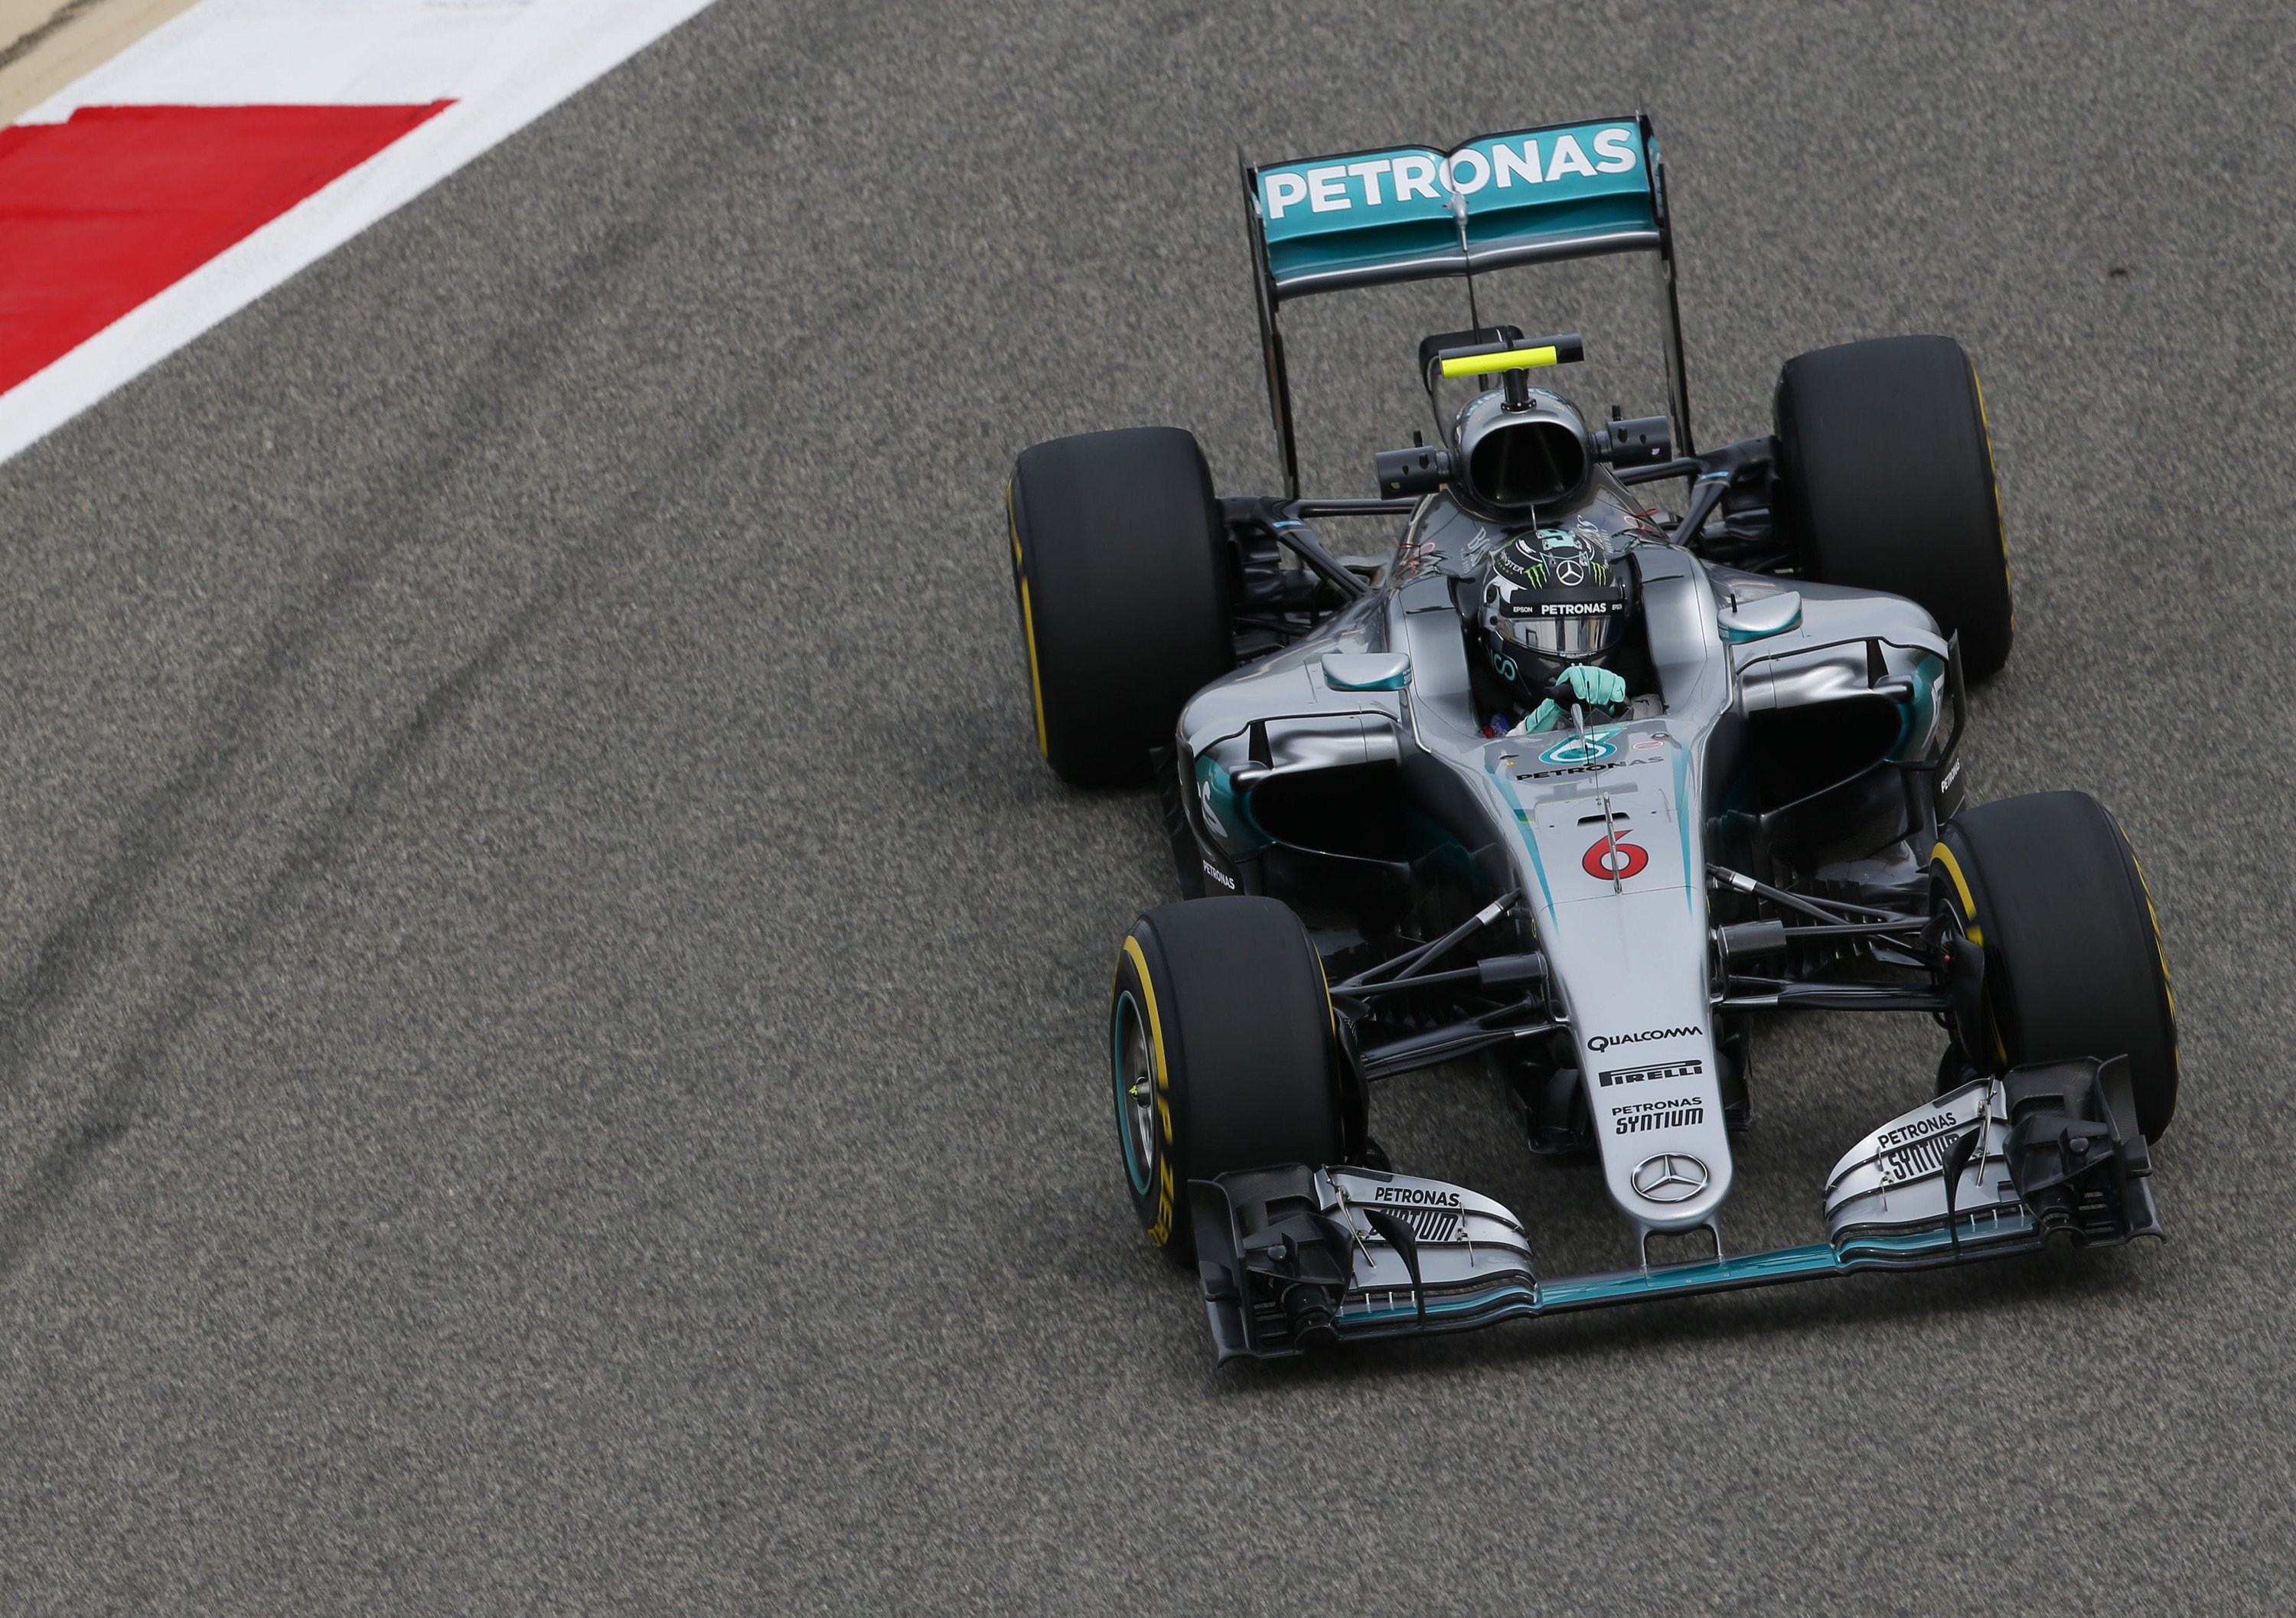 F1, Gp Bahrain 2016, Rosberg: «La chiave della mia gara? La partenza» -  Formula 1 - Automoto.it